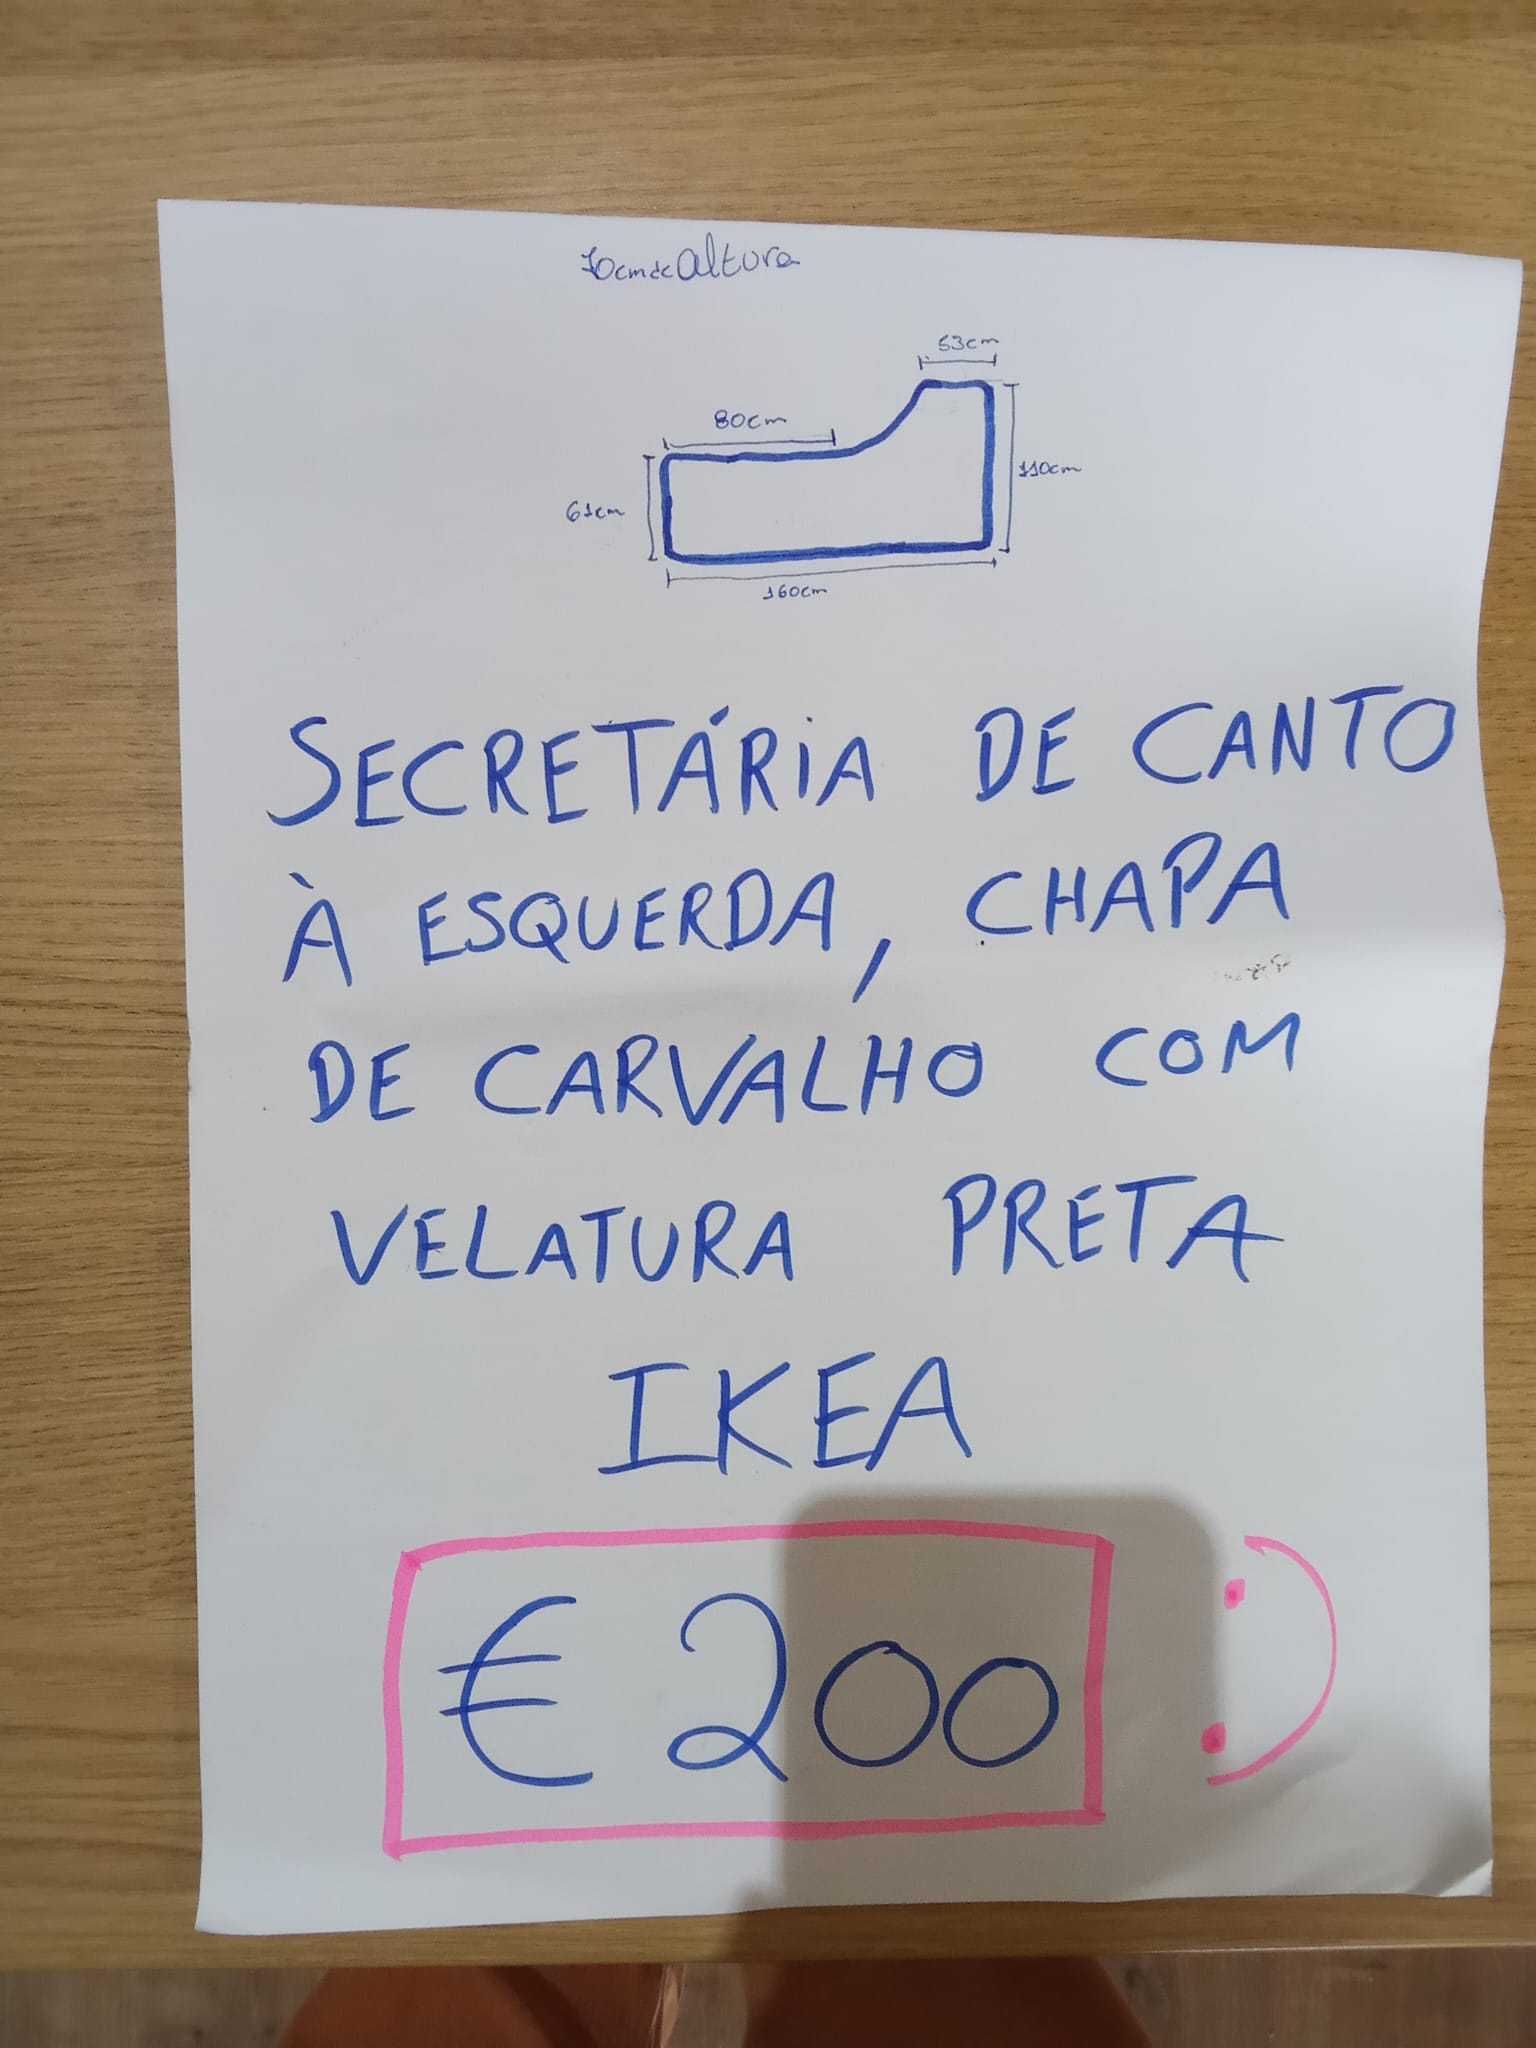 Secretária de Canto IKEA, peça única em carvalho com velatura preta